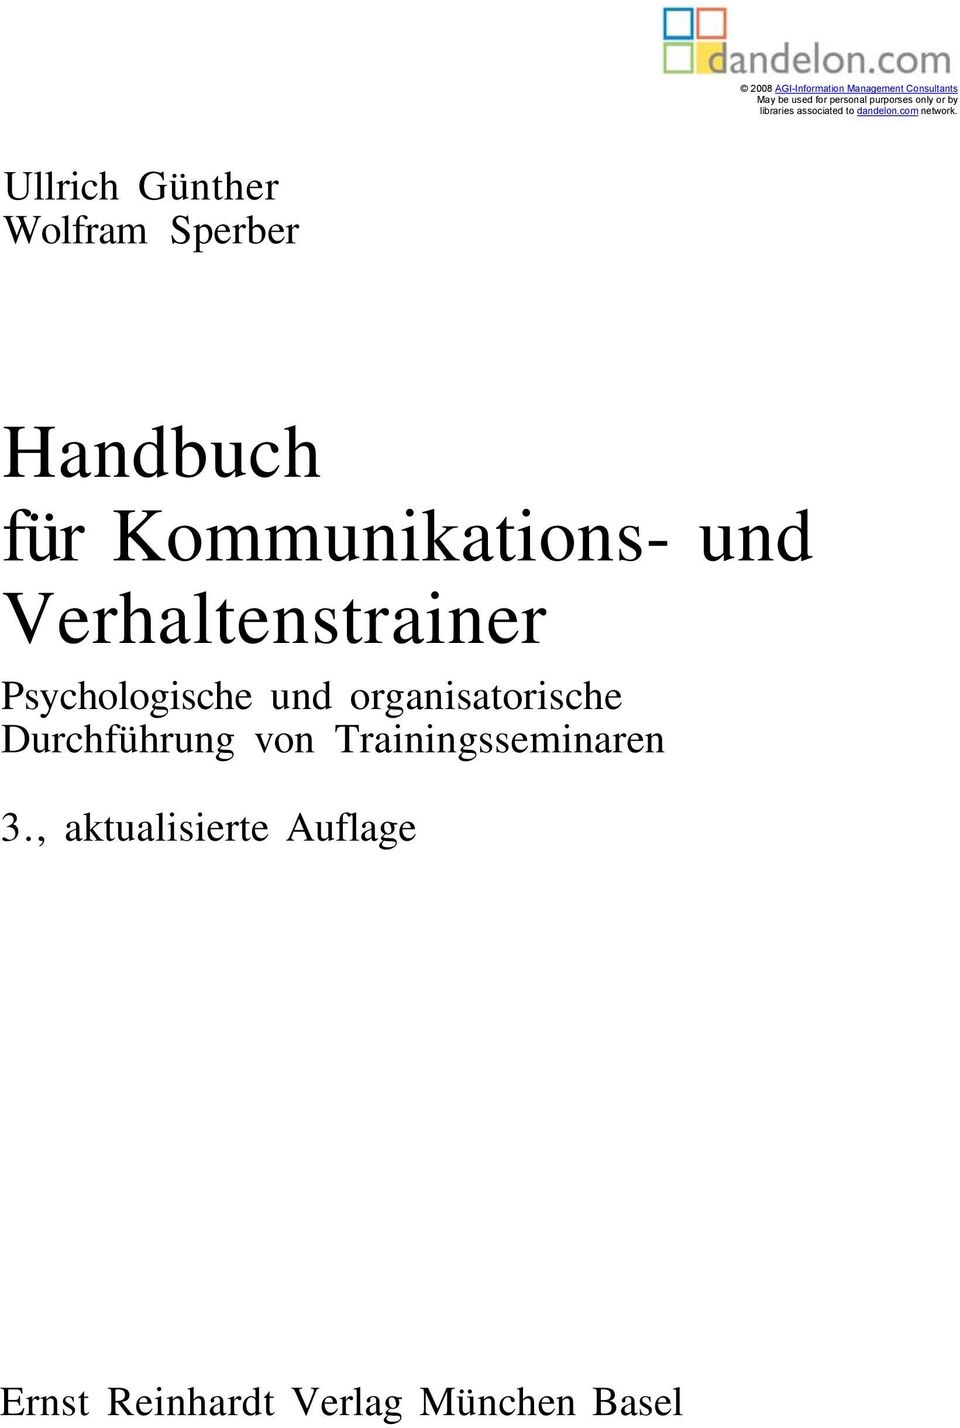 Ullrich Günther Wolfram Sperber Handbuch für Kommunikations- und Verhaltenstrainer